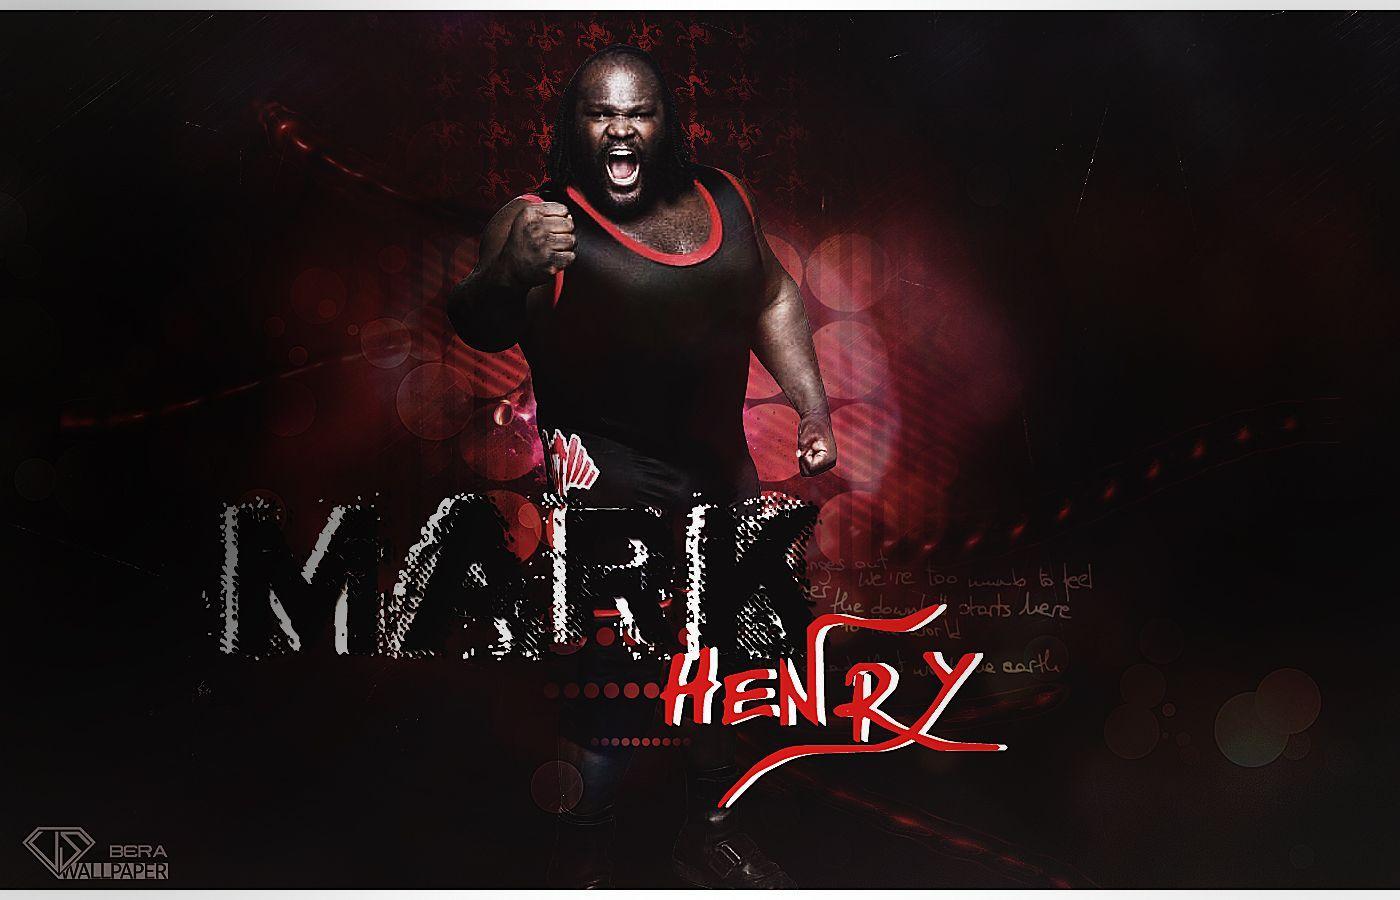 WWE WALLPAPERS: Mark henry. Mark henry Wallpaper. Mark henry